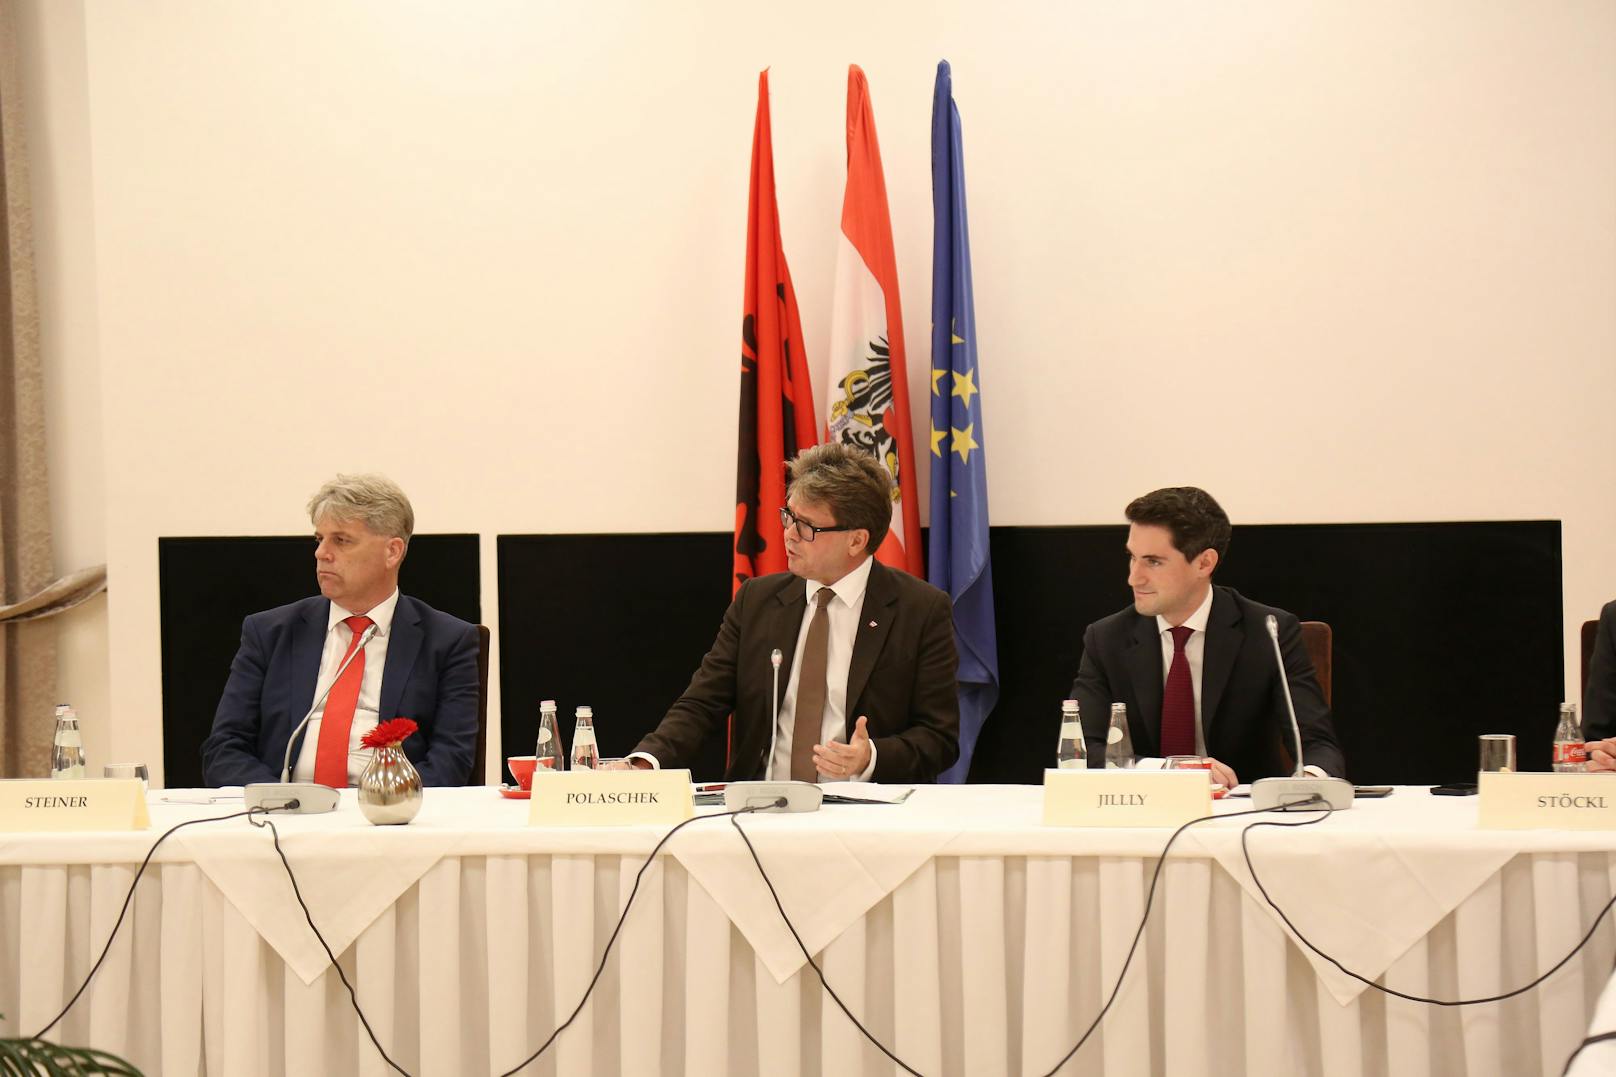 "Das ist eine nachhaltige Maßnahme, um auch international qualifizierte Fachkräfte für Österreich zu gewinnen", betont Polaschek.